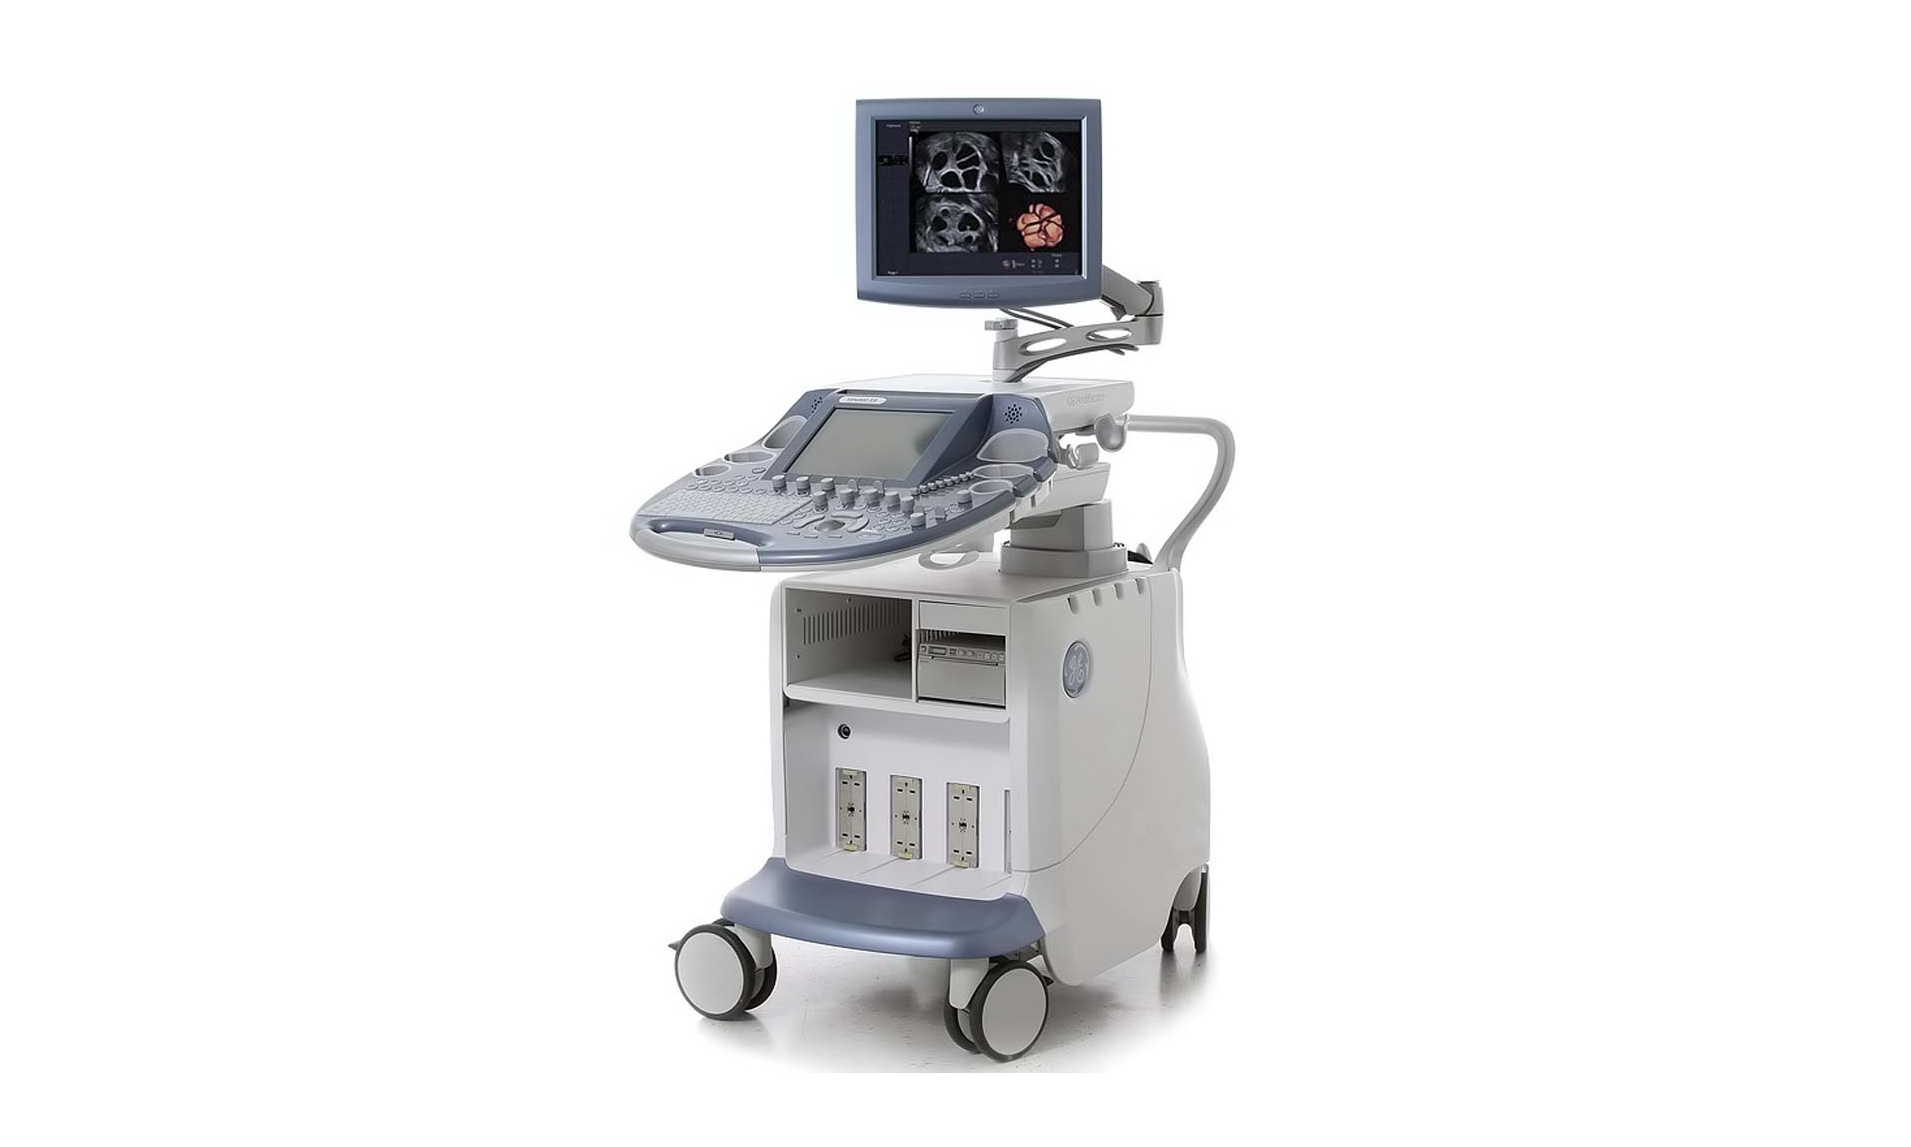 普洱市中医医院彩色多普勒超声波诊断仪采购项目公开招标